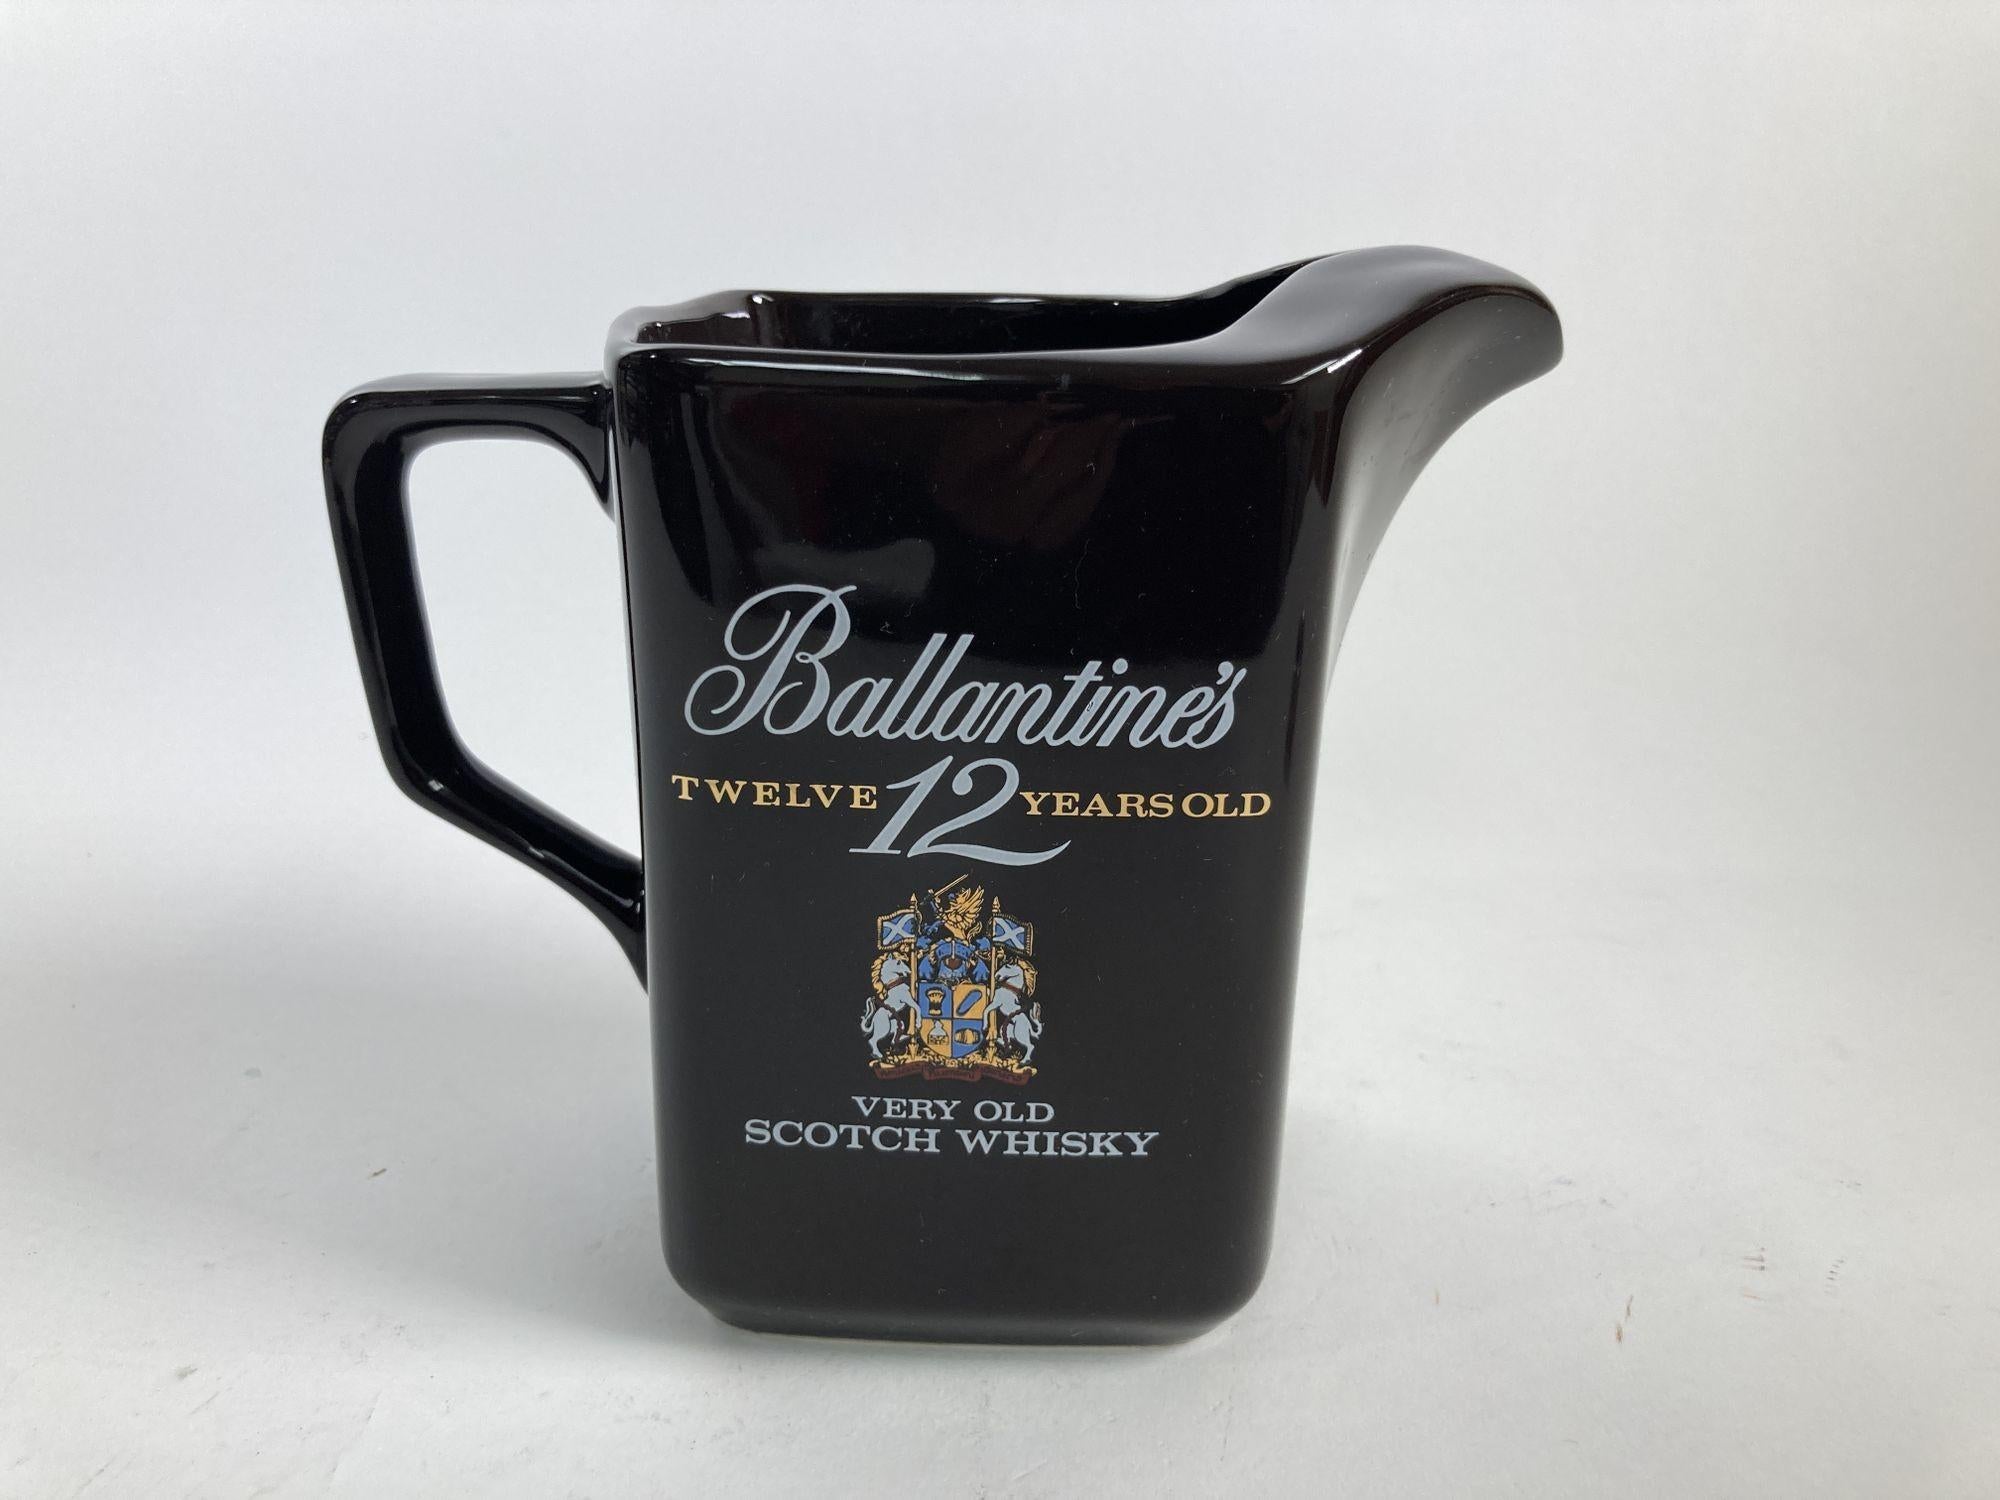 Vintage Sammlerstück schwarzer Keramikkrug für Ballantine's 12 Jahre alten Whisky Pub Krug Bar Krug.
Vintage Ballantine's Werbung Pub Pitcher, Wasser Krug, Keramik-Glas, Wasser Jar, Scotch Whisky.
Diese sammelwürdigen Keramikkrüge wurden in